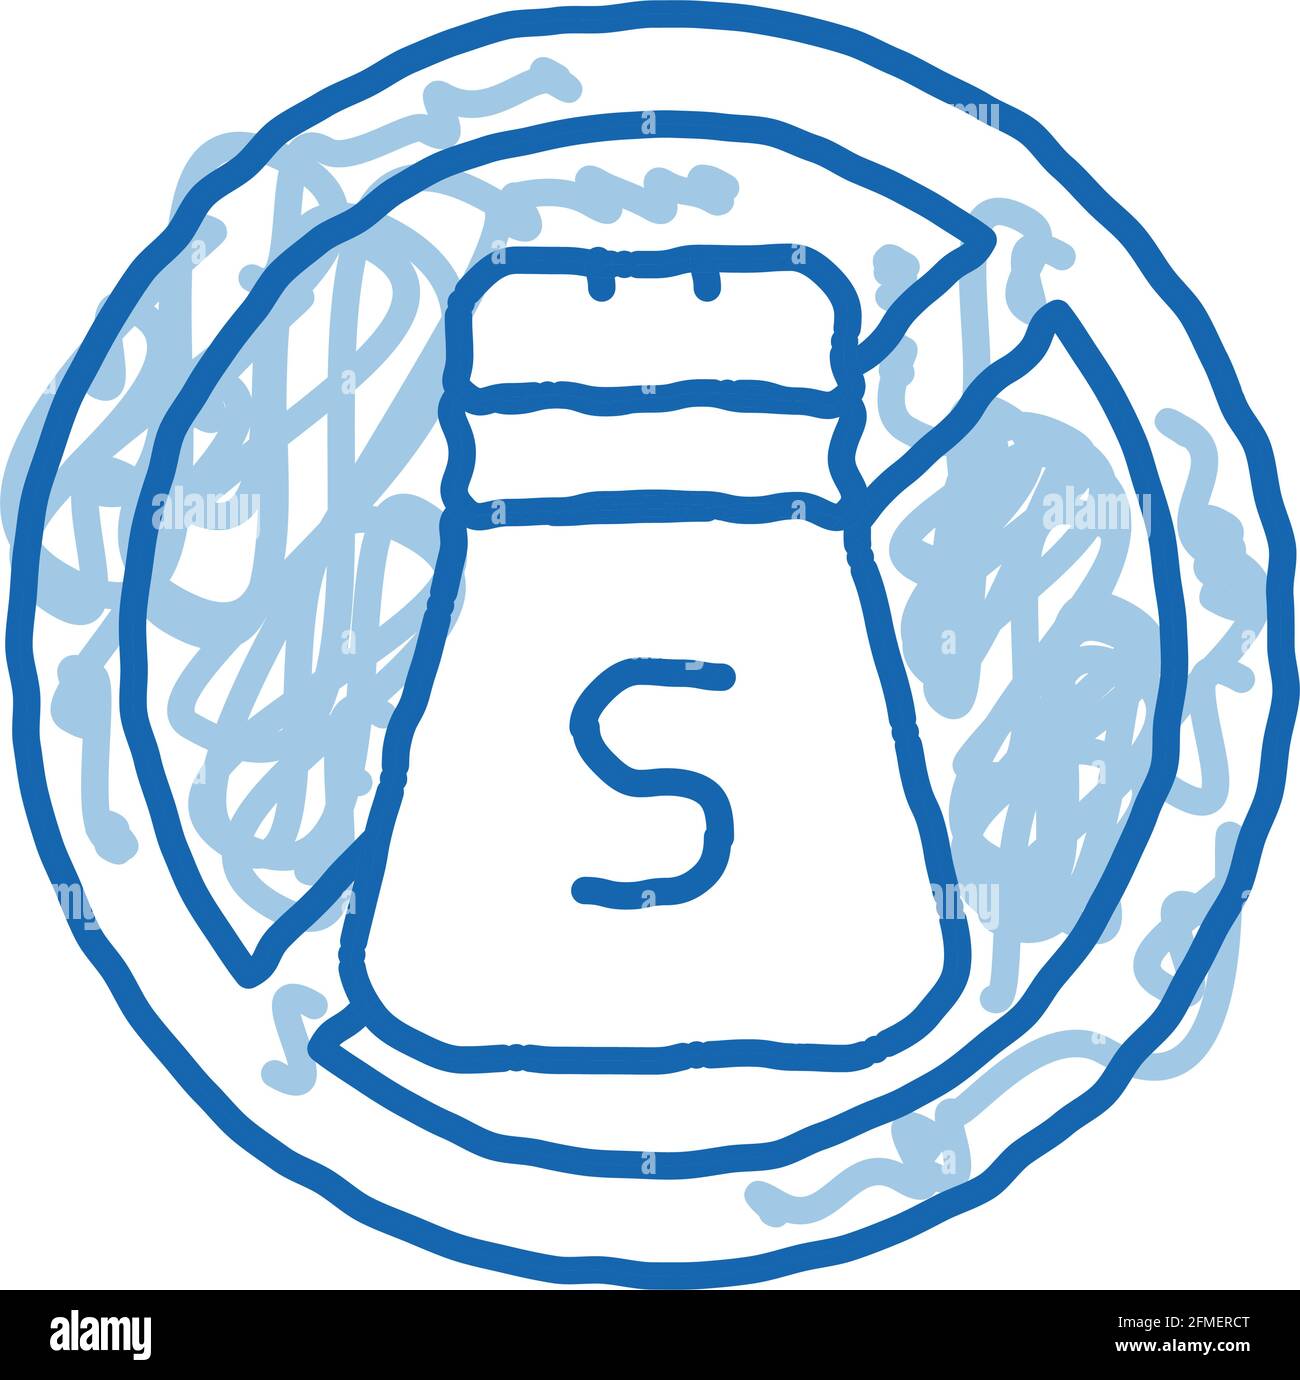 Allergenfrei Gewürz Salz Doodle Symbol Handgezeichnete Illustration Stock Vektor